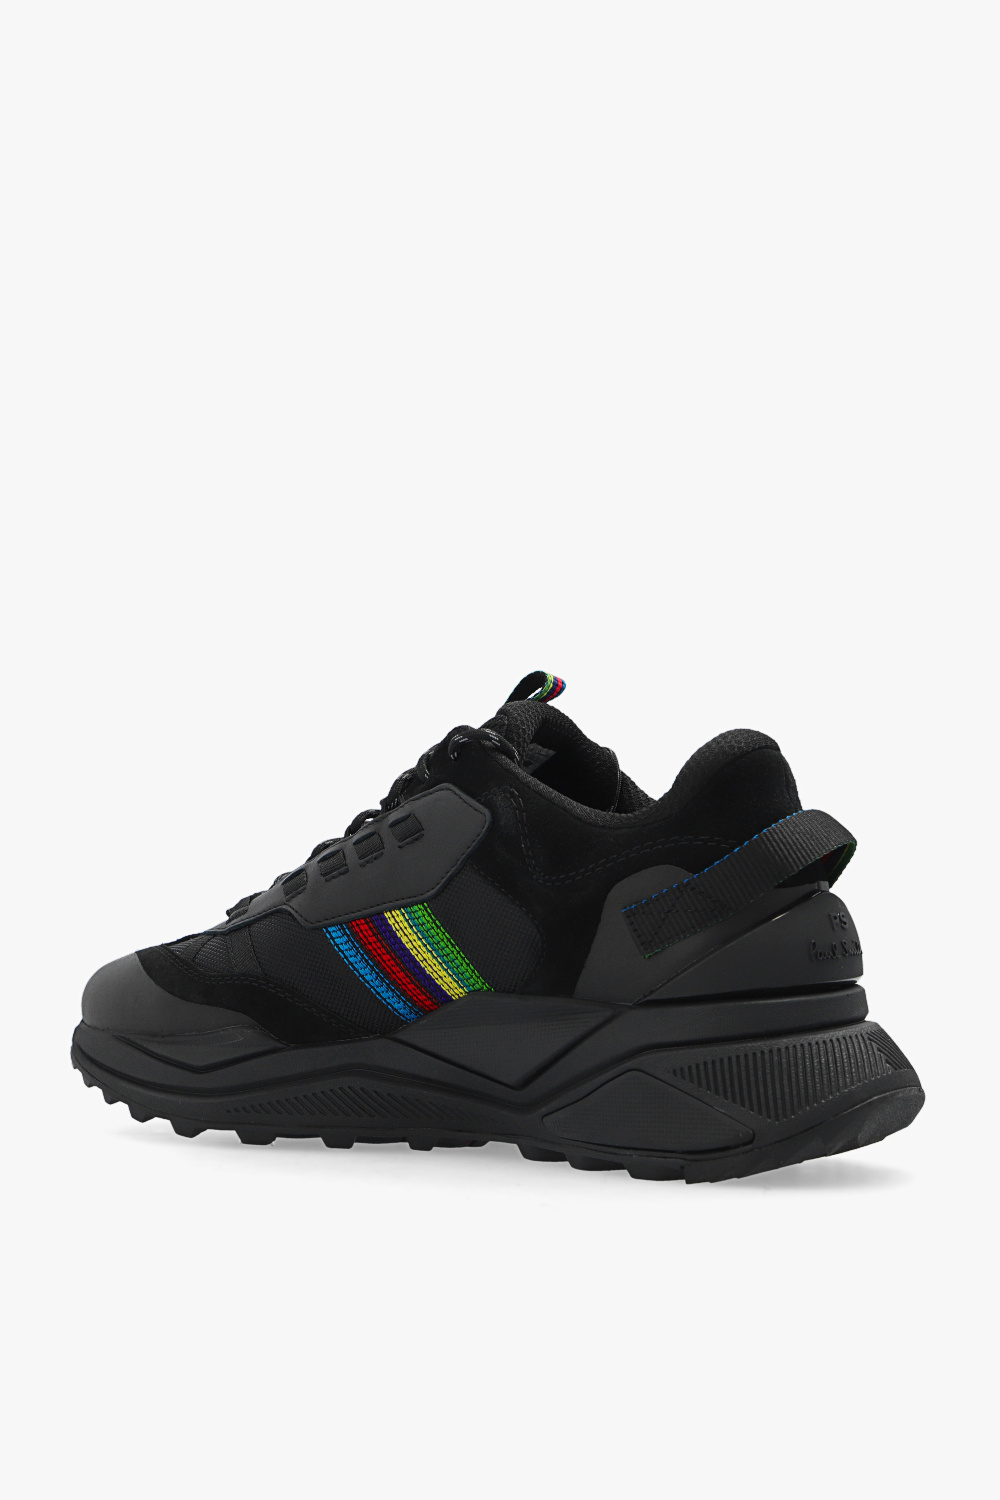 zapatillas de running HOKA constitución media minimalistas talla 47.5 grises ‘Primus’ sneakers